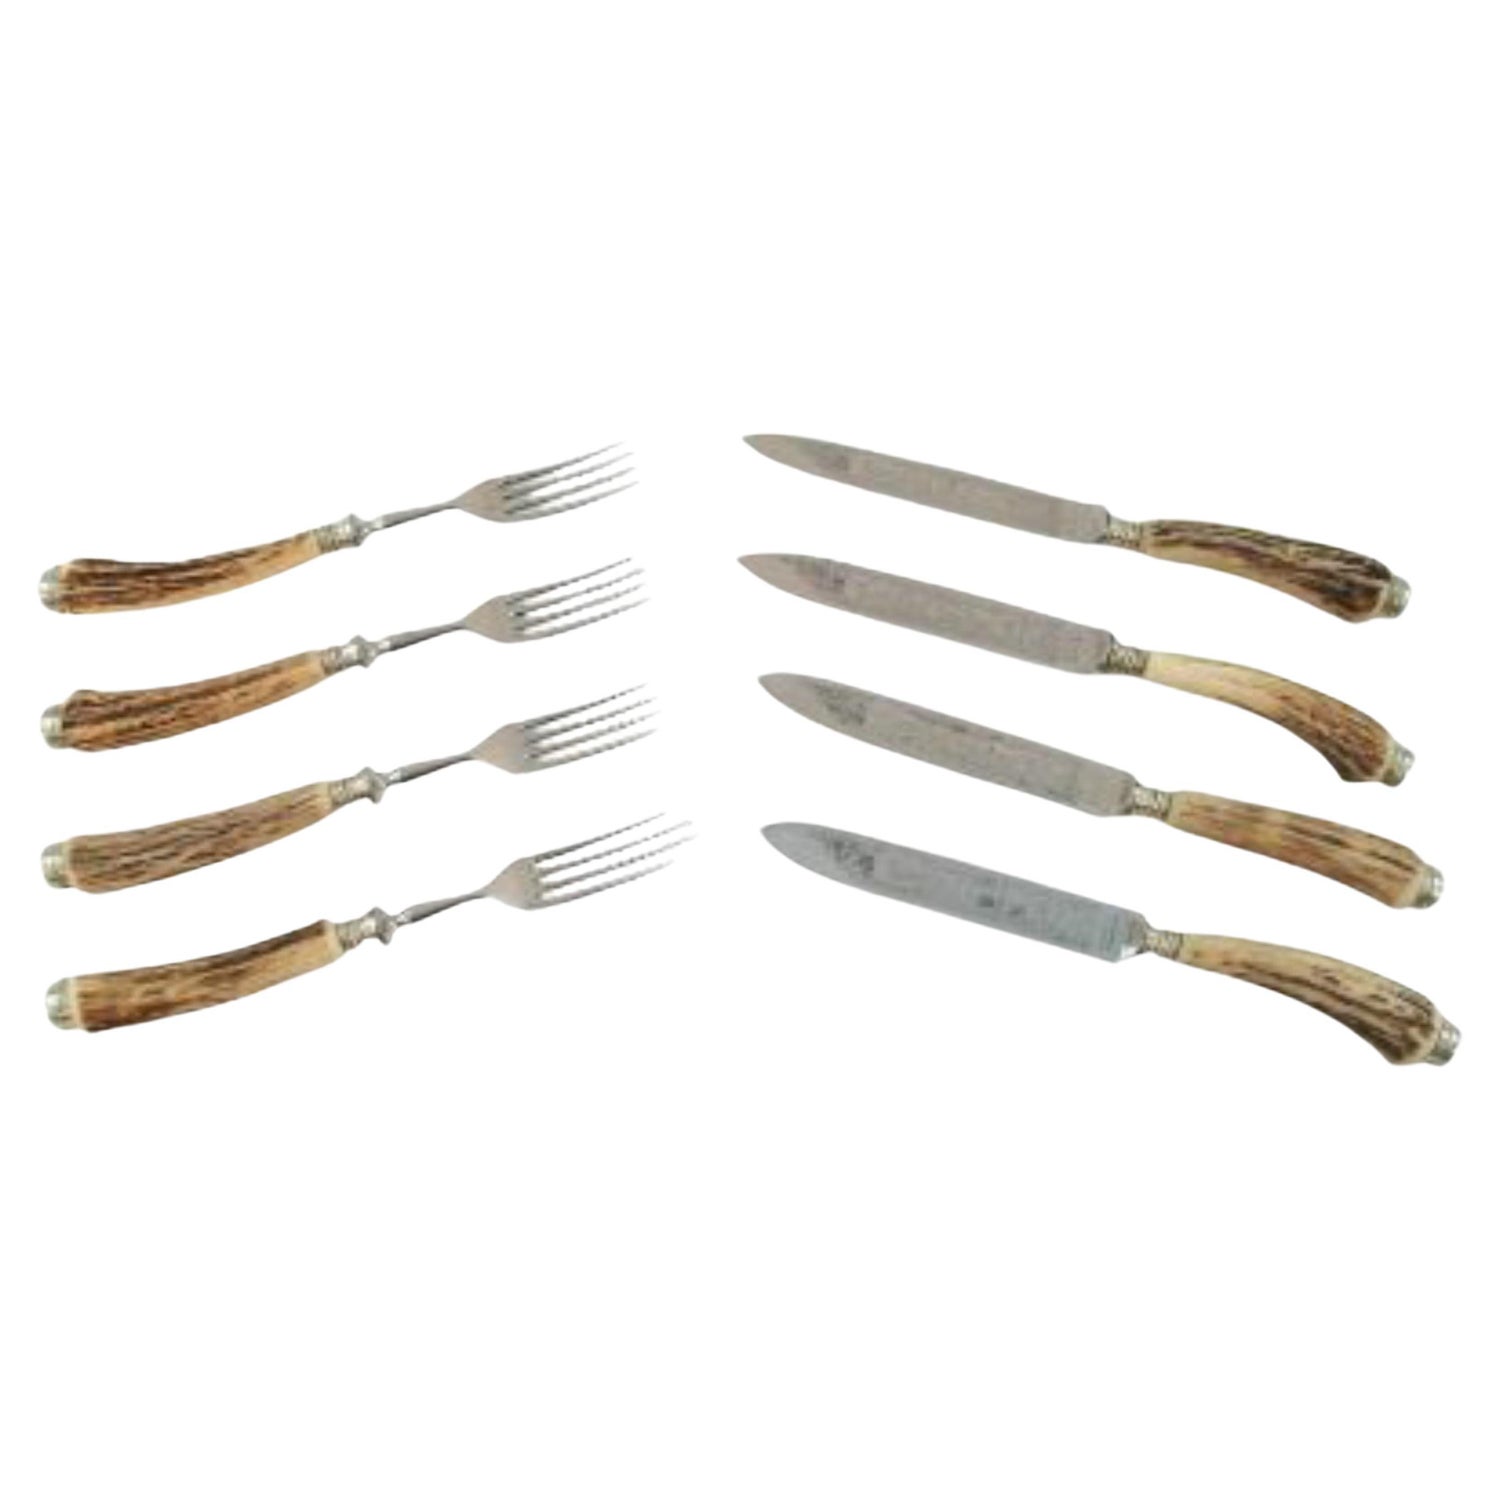 https://a.1stdibscdn.com/solingen-set-of-4-horn-handled-steak-knives-forks-germany-circa-1950s-for-sale/f_72652/f_360769321694201087662/f_36076932_1694201088499_bg_processed.jpg?width=1500